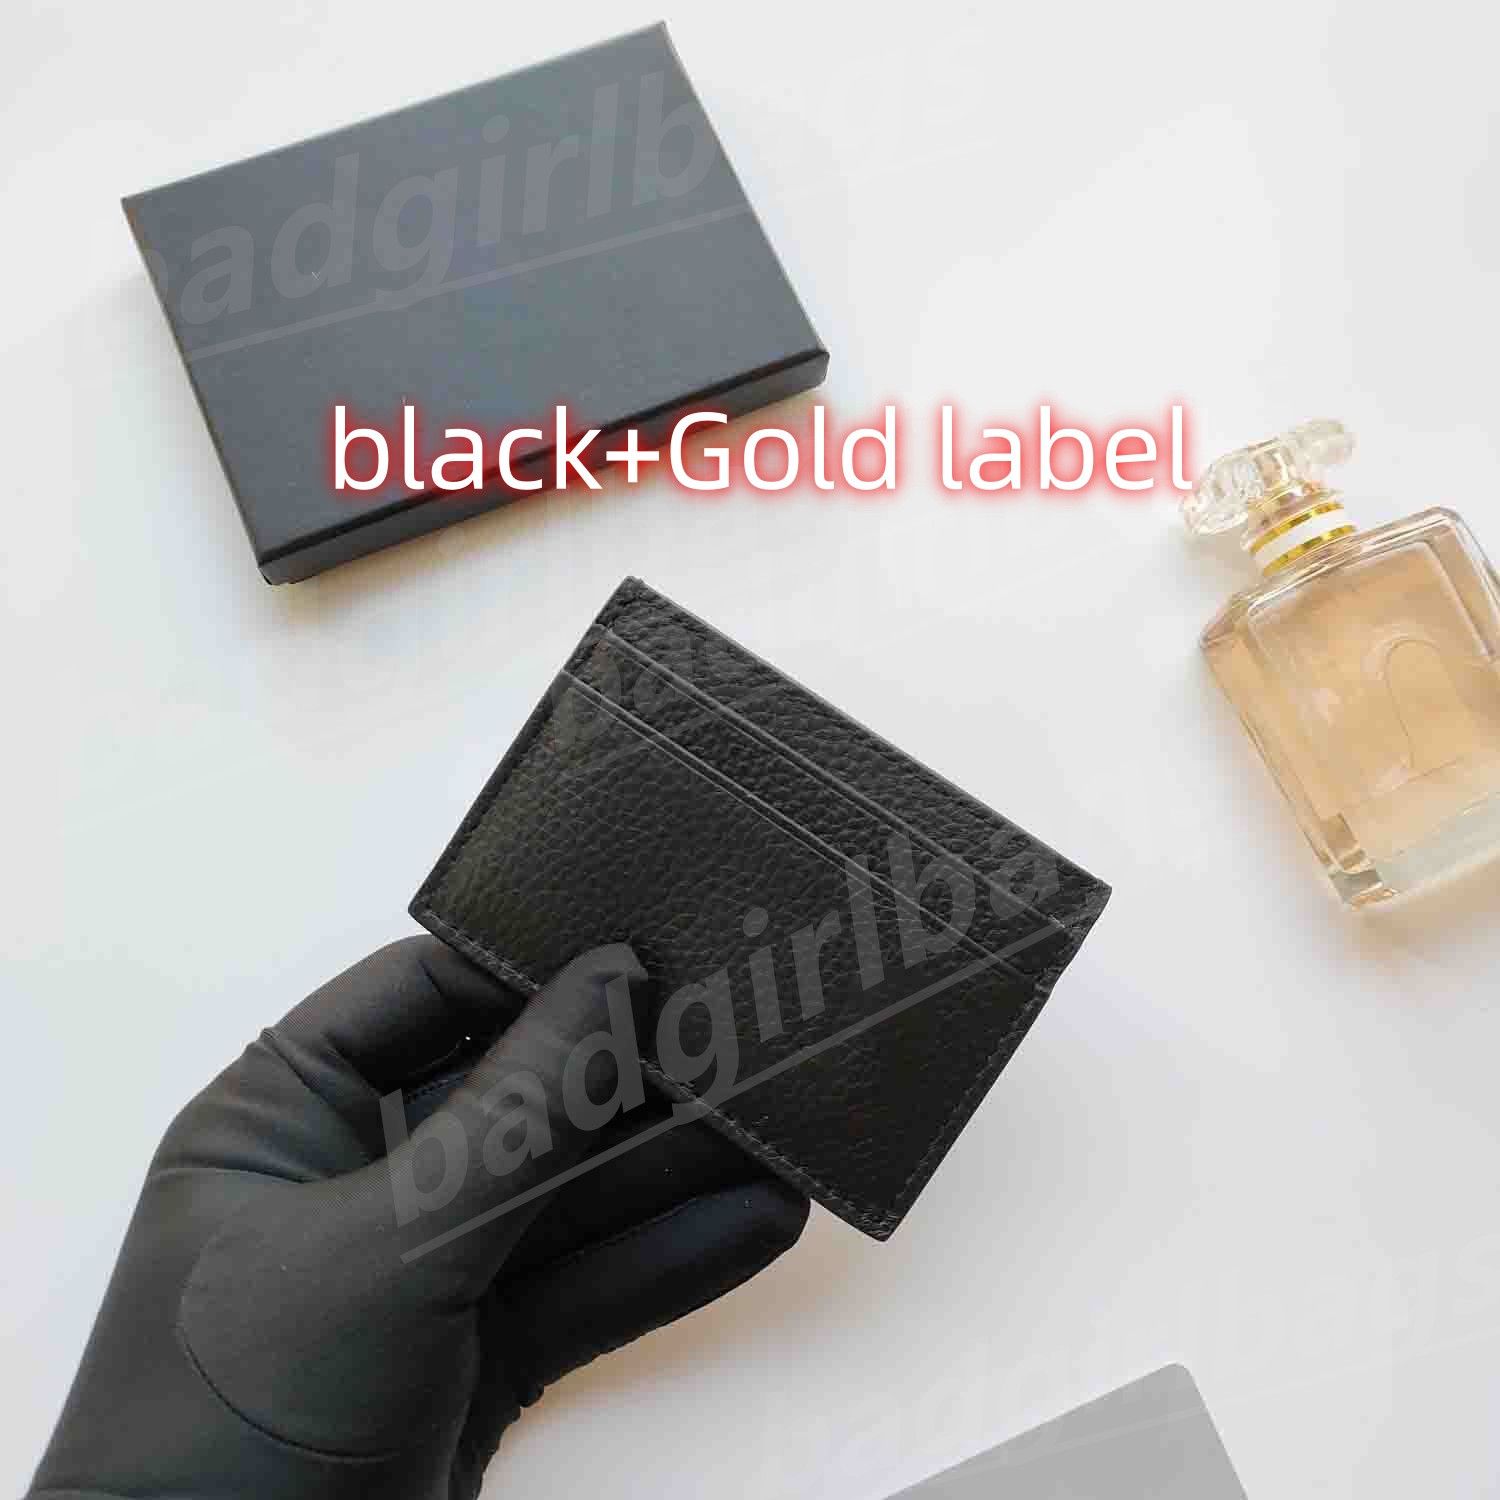 1-black+Gold label